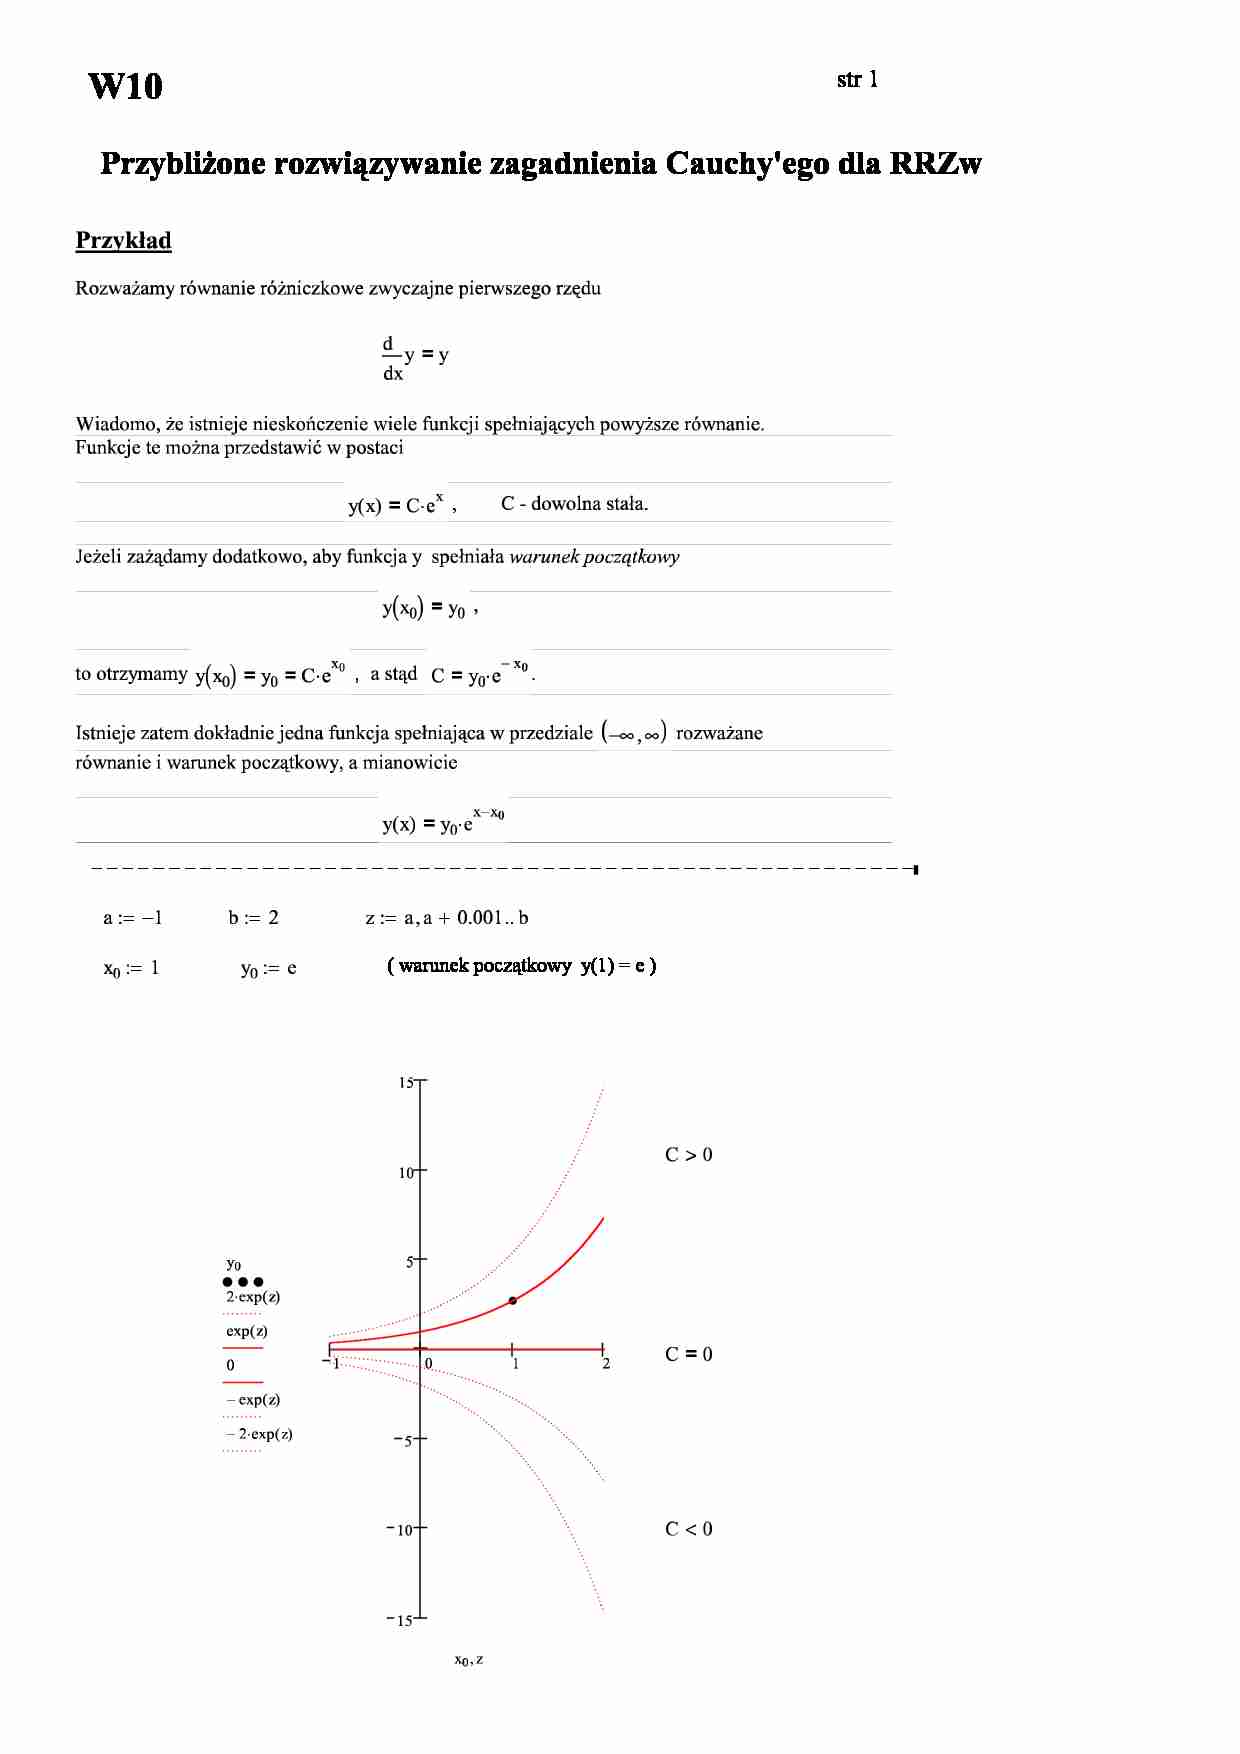 Zagadnienie Cauchy'ego - przybliżone rozwiązywanie - strona 1